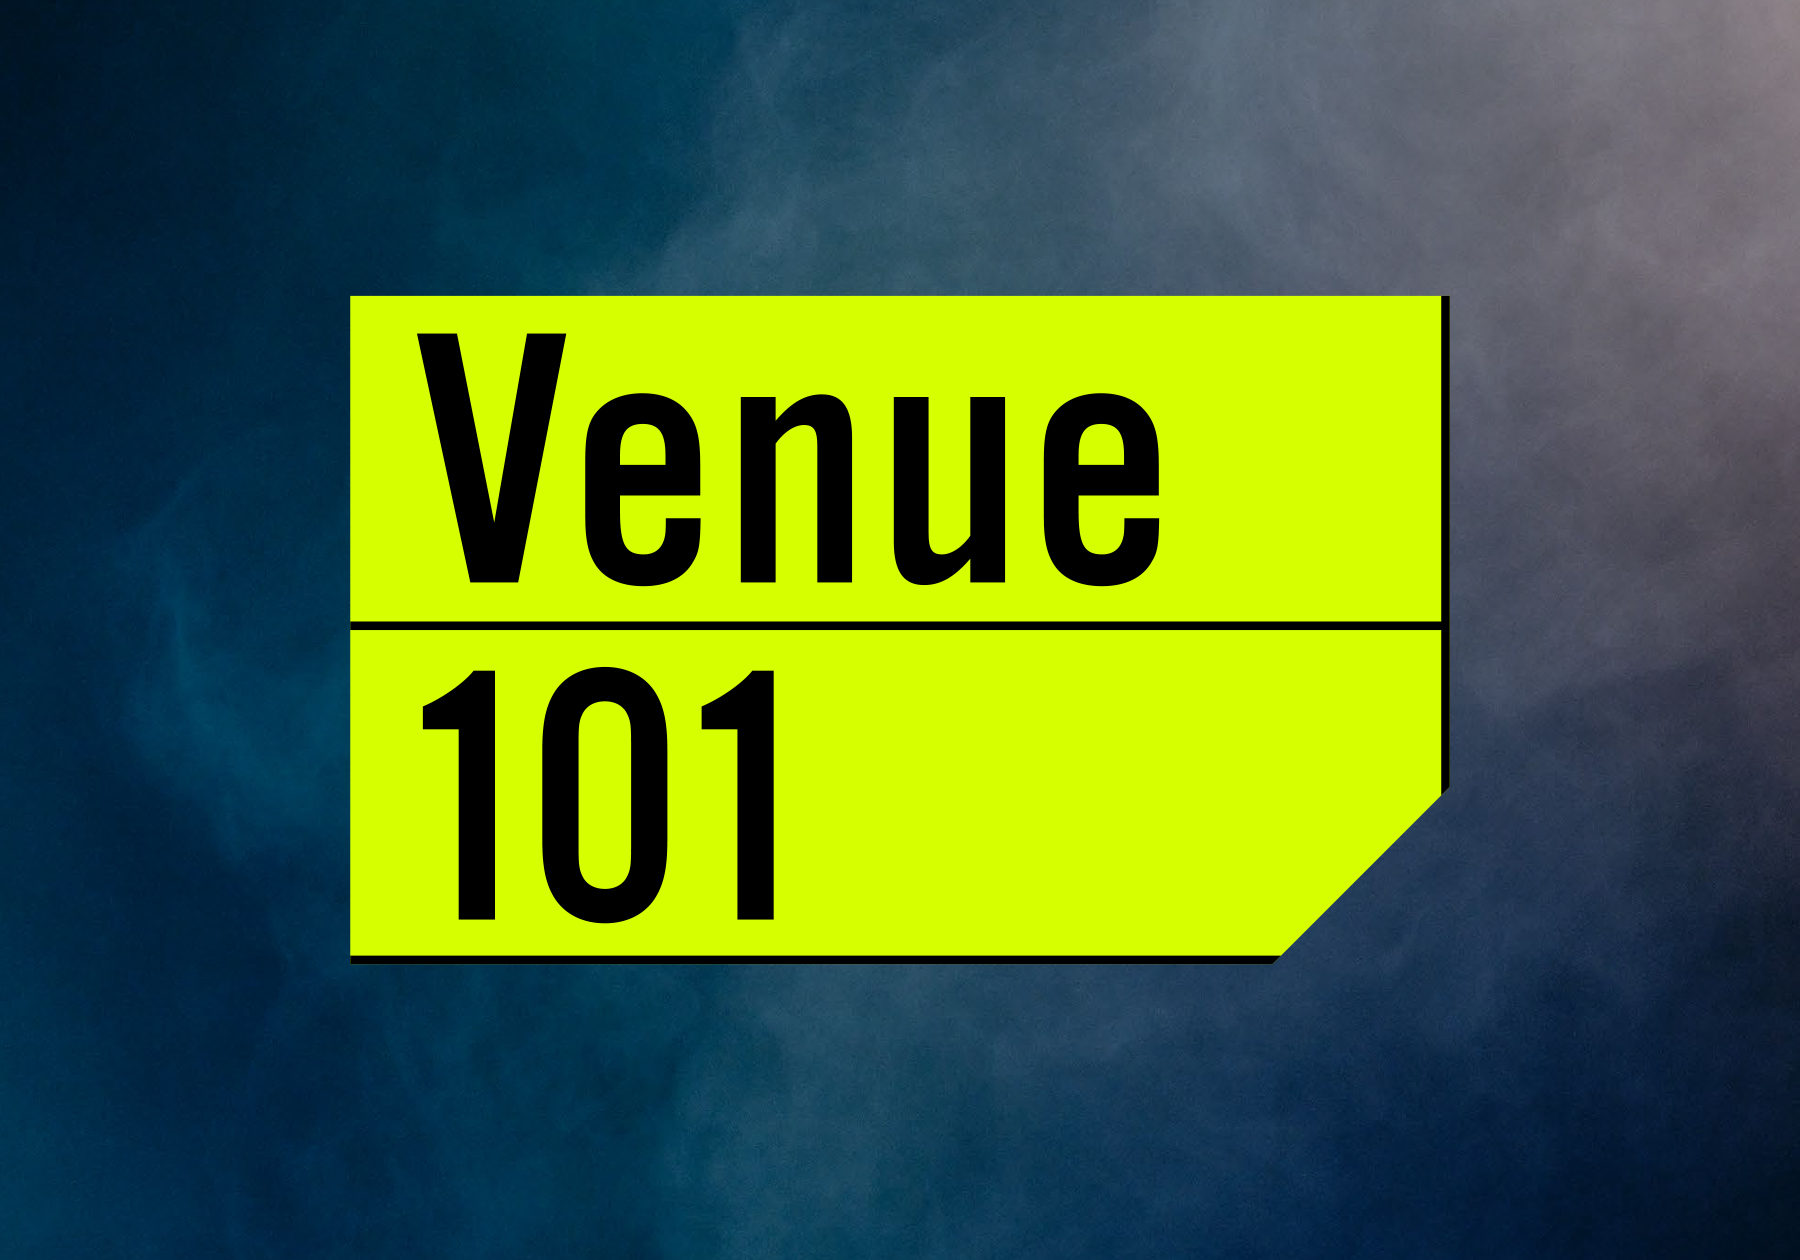 「Venue 101」のアイキャッチ画像